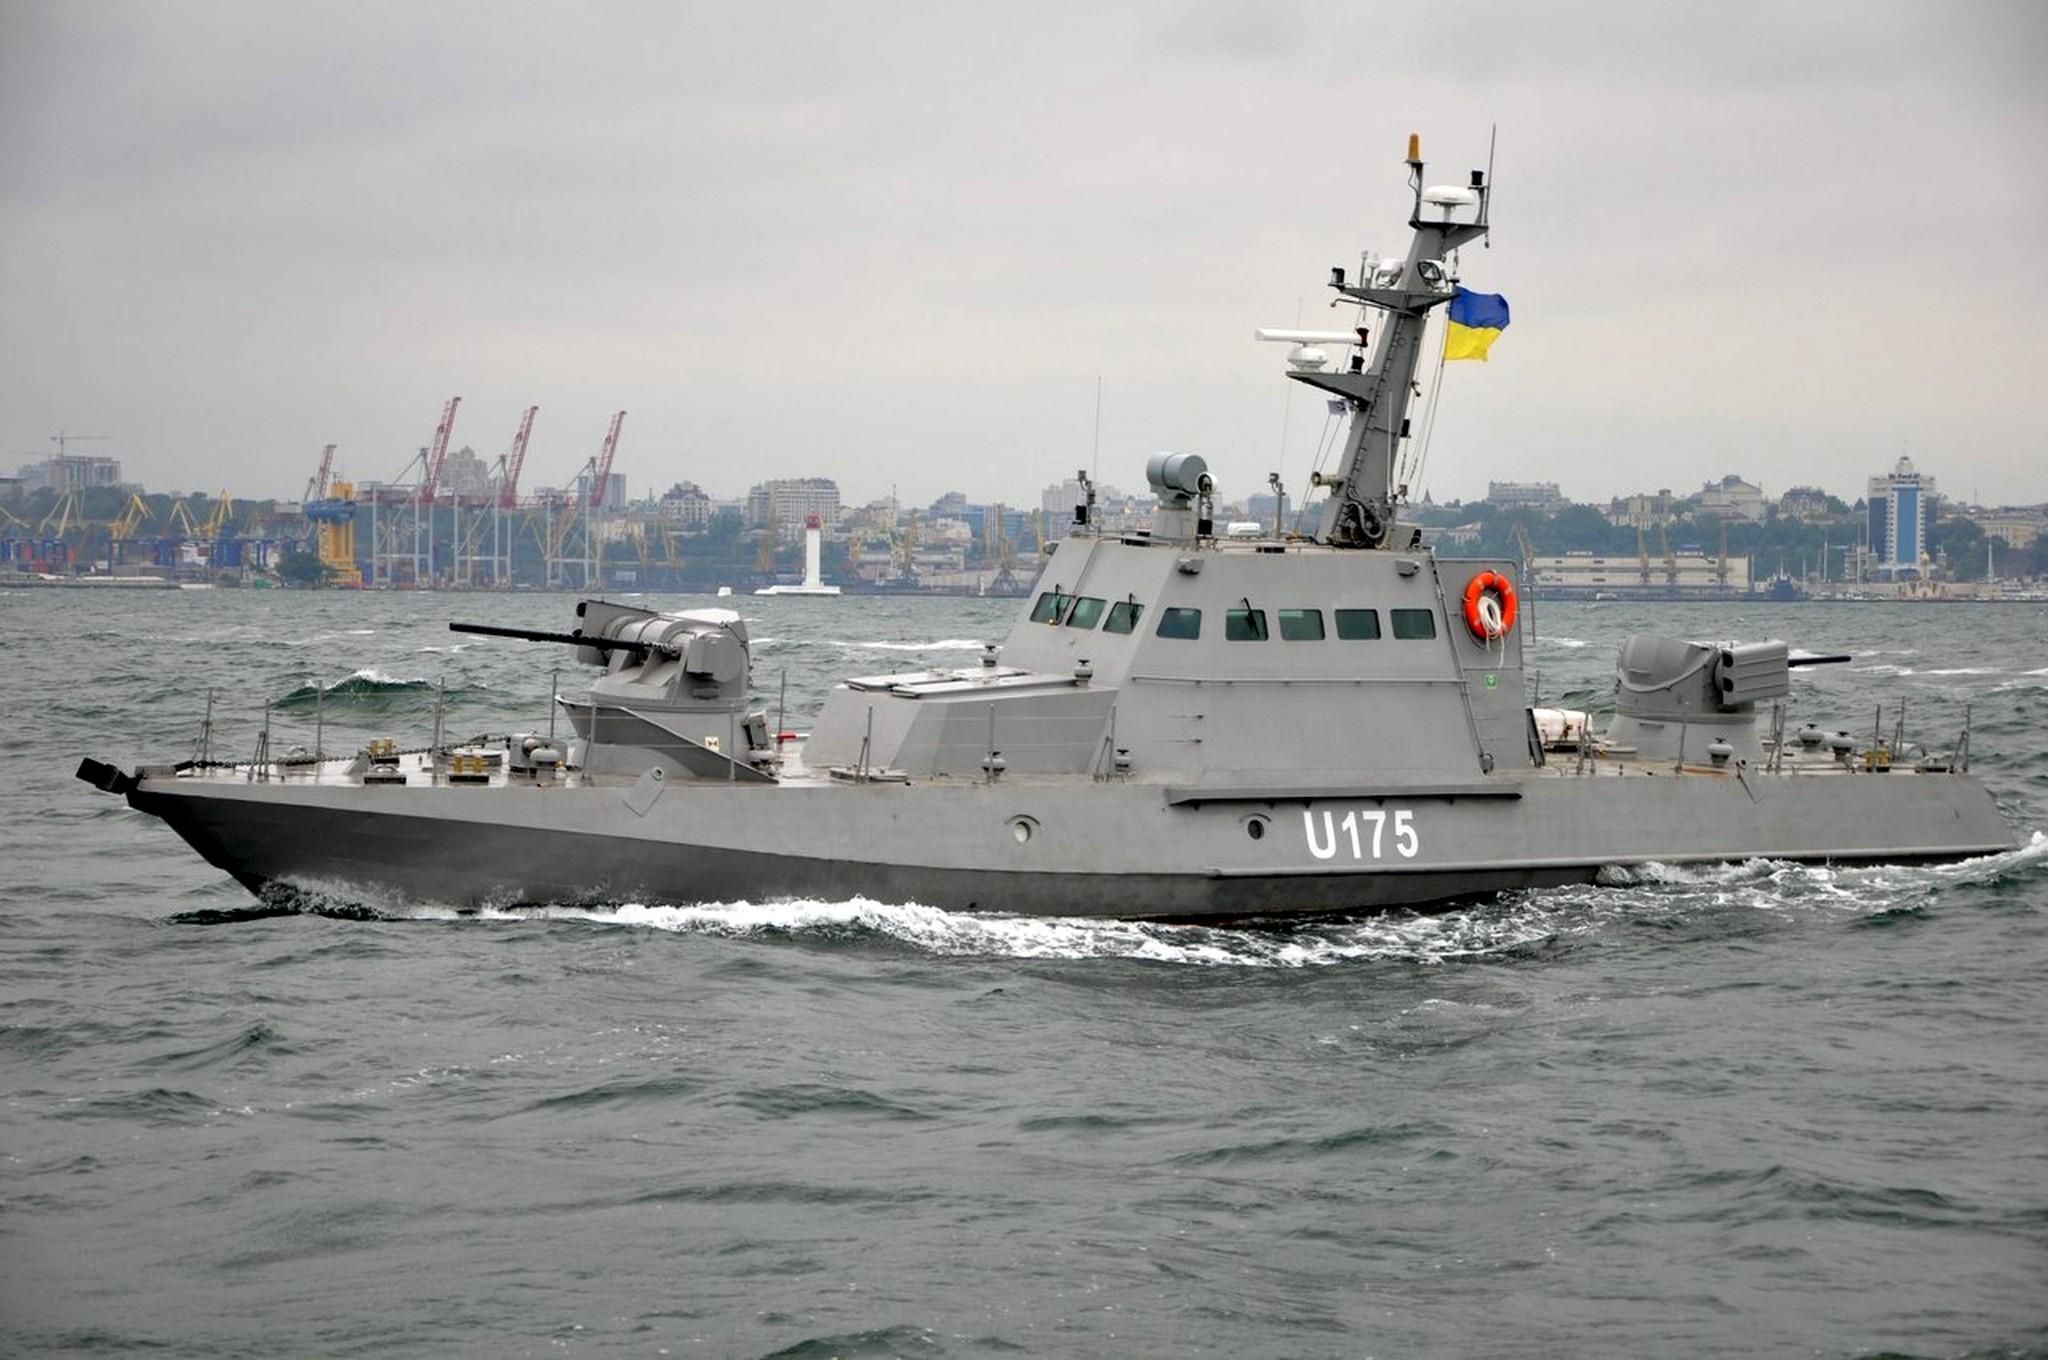 Россия заинтересована вернуть Украине захваченные в Азове корабли, – Полозов